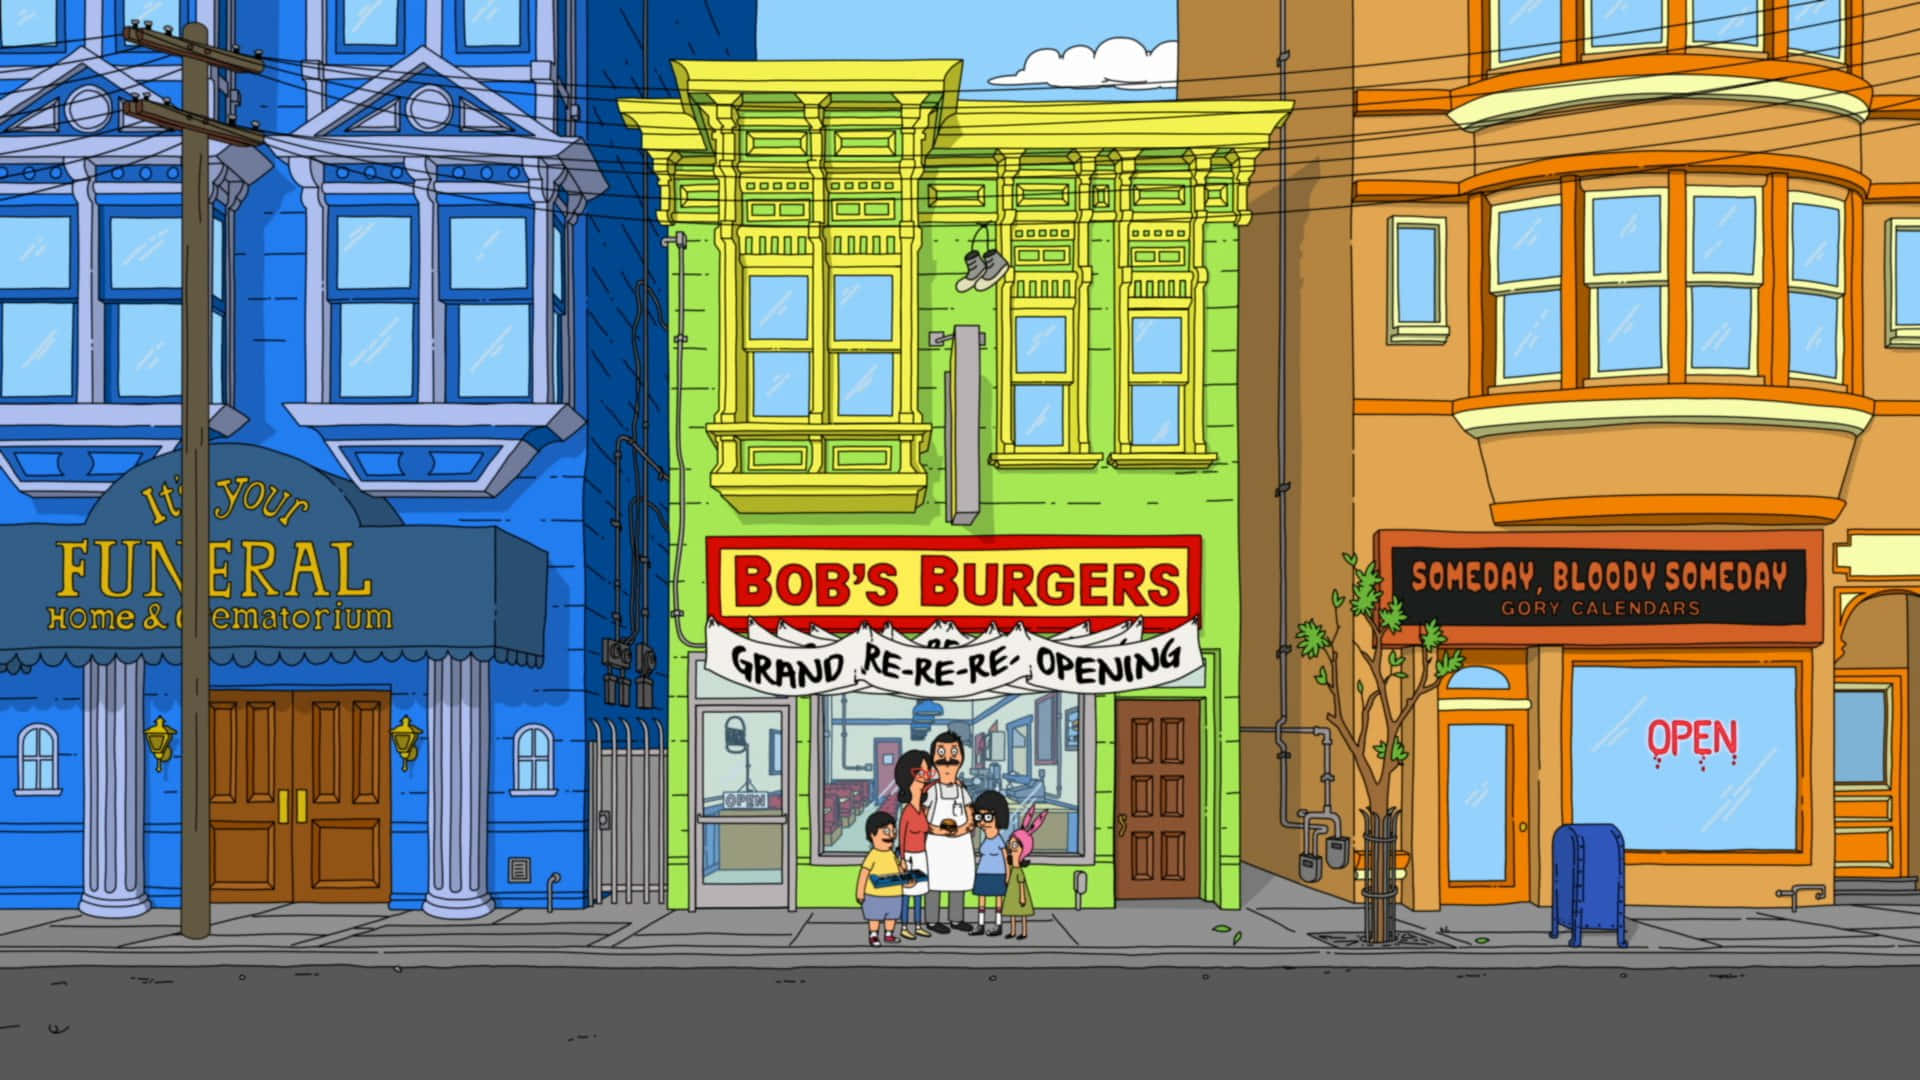 Fondode Pantalla Del Gran Re-re-reapertura De Bob's Burgers